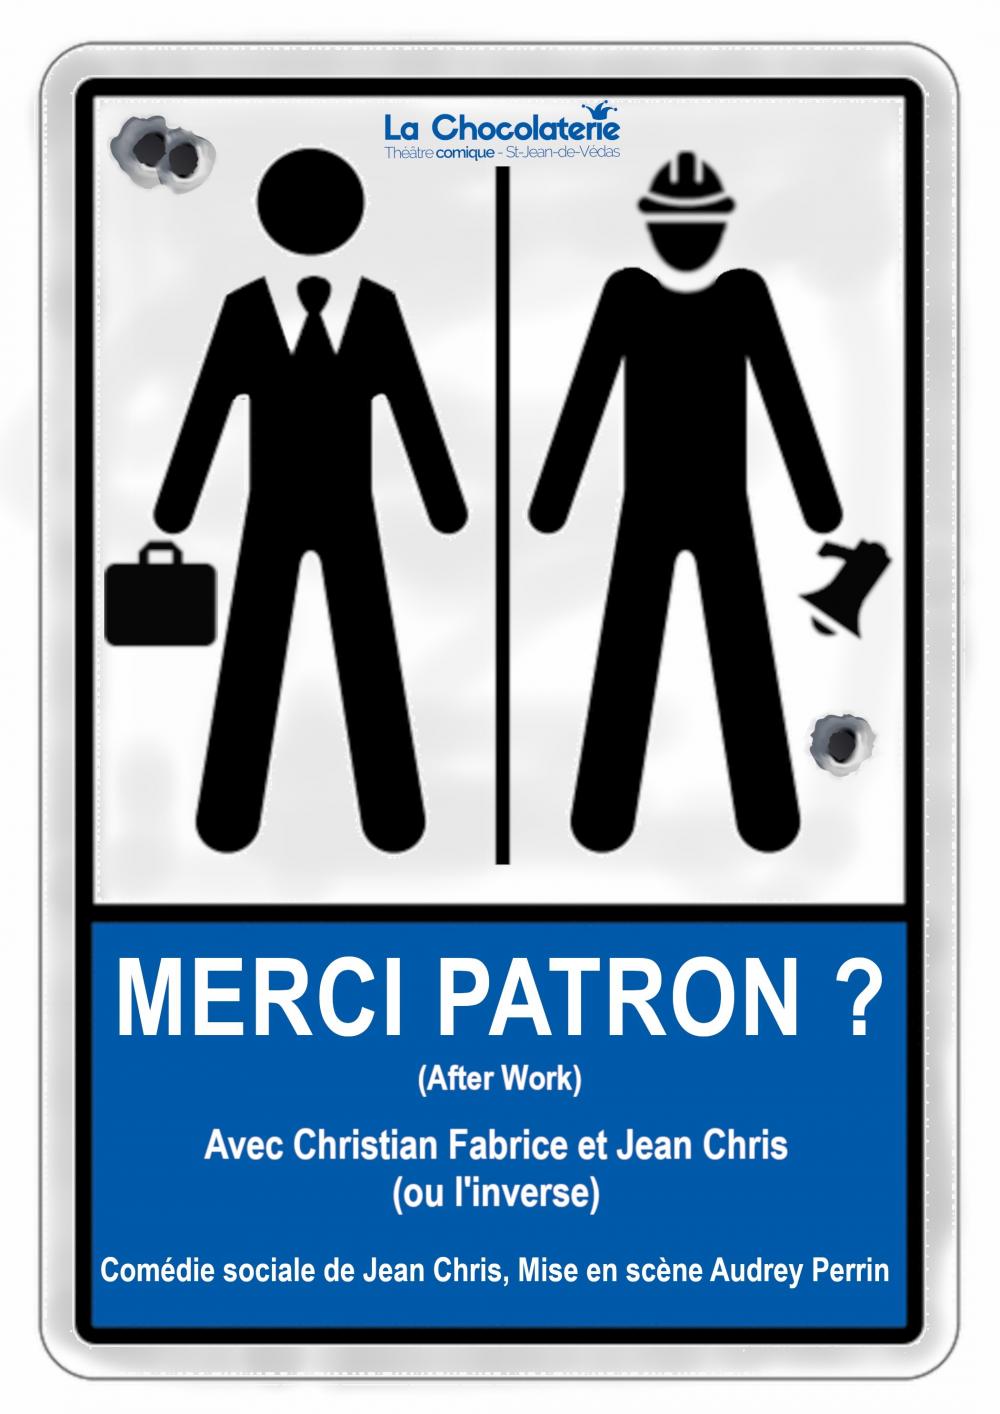 Affiche de Merci Patron : un pictogramme de toilettes revisités, un ouvrier et un patron au lieu d'une femme et un homme